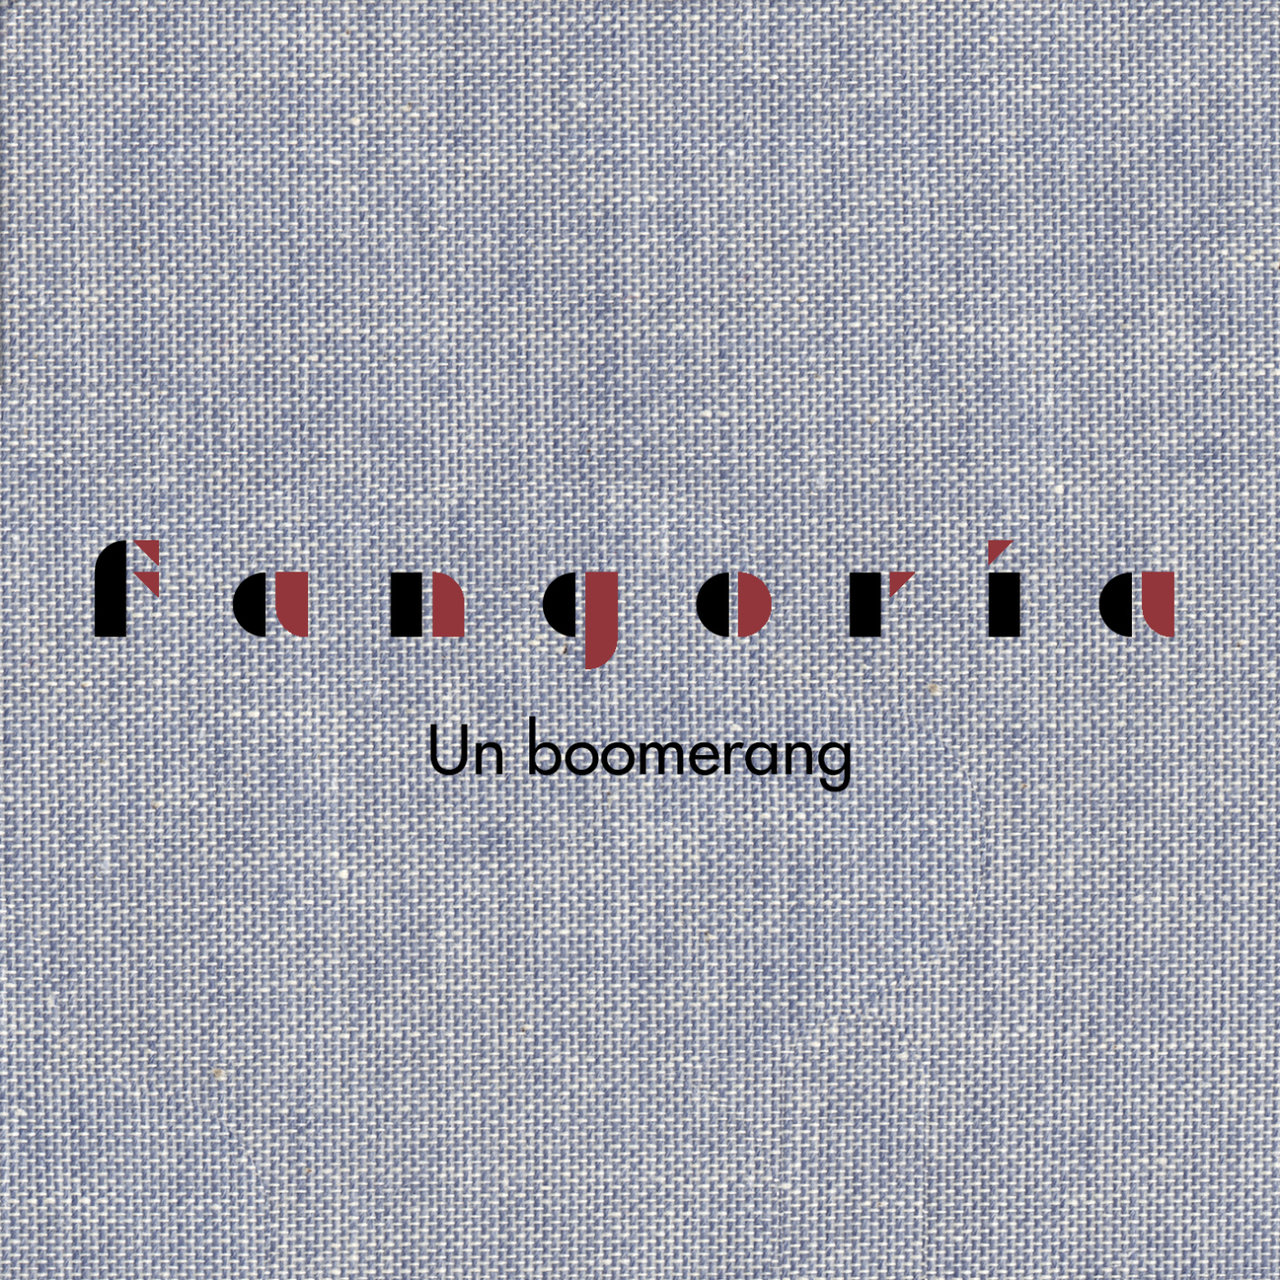 Fangoria Un boomerang cover artwork